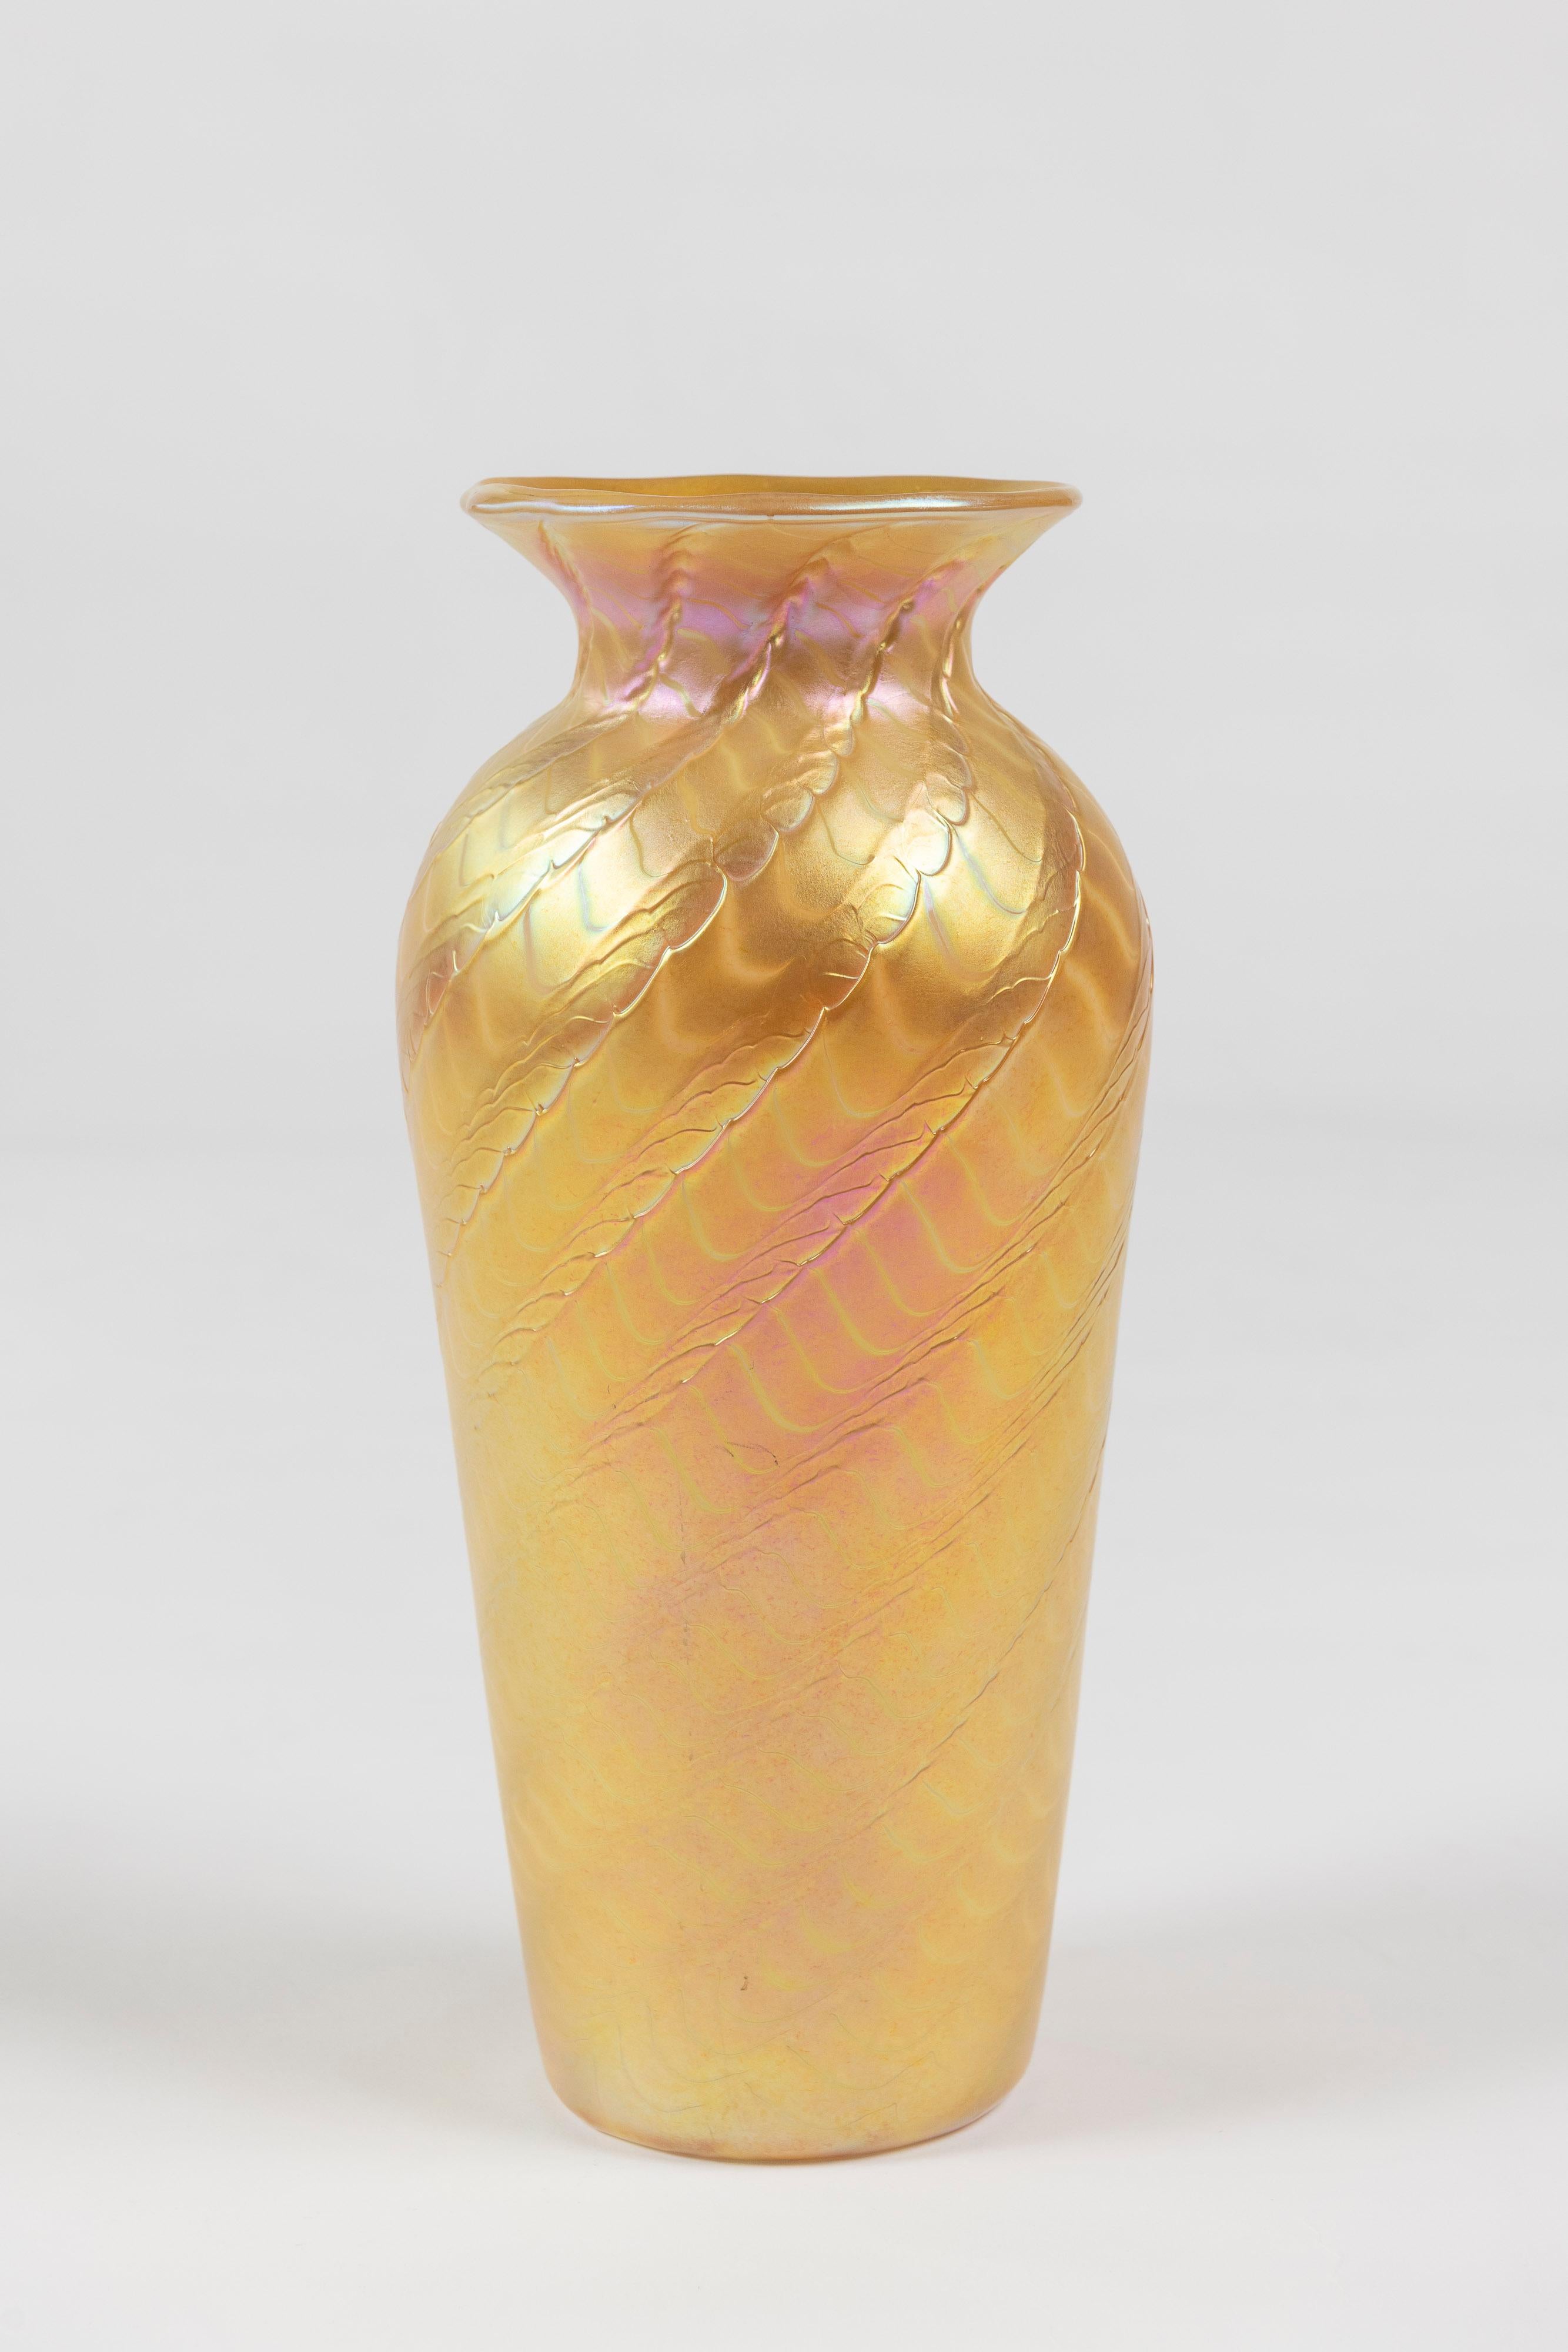 Remarquable vase conique en verre d'art aurène doré fabriqué par Lundberg Studios, Californie. Signé en 2000, ce vase a une belle finition et est en bon état.